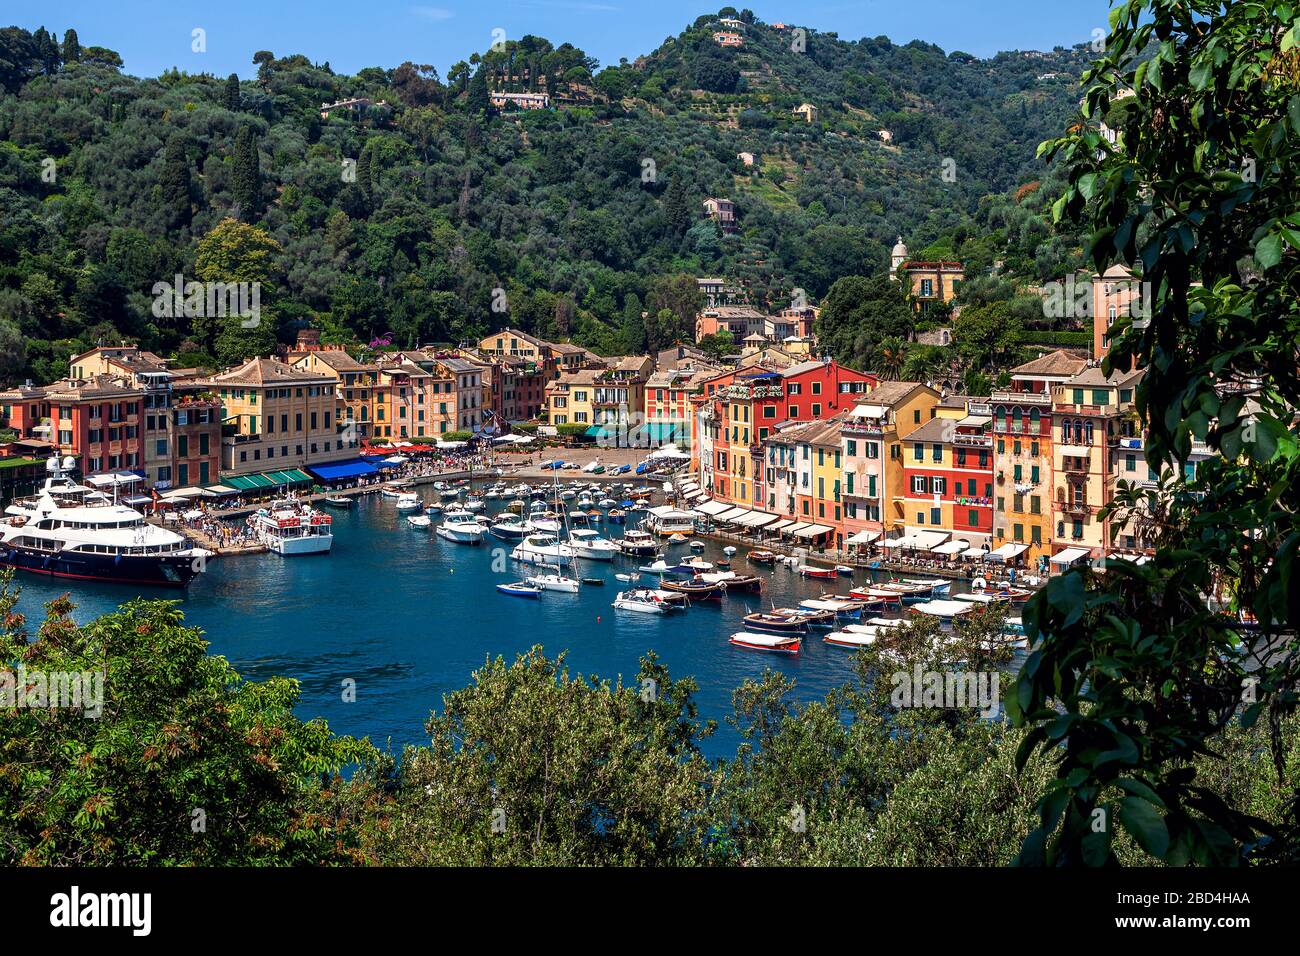 Blick von oben auf die kleine Bucht mit Jachten und bunten Häusern in Portofino, Italien. Stockfoto